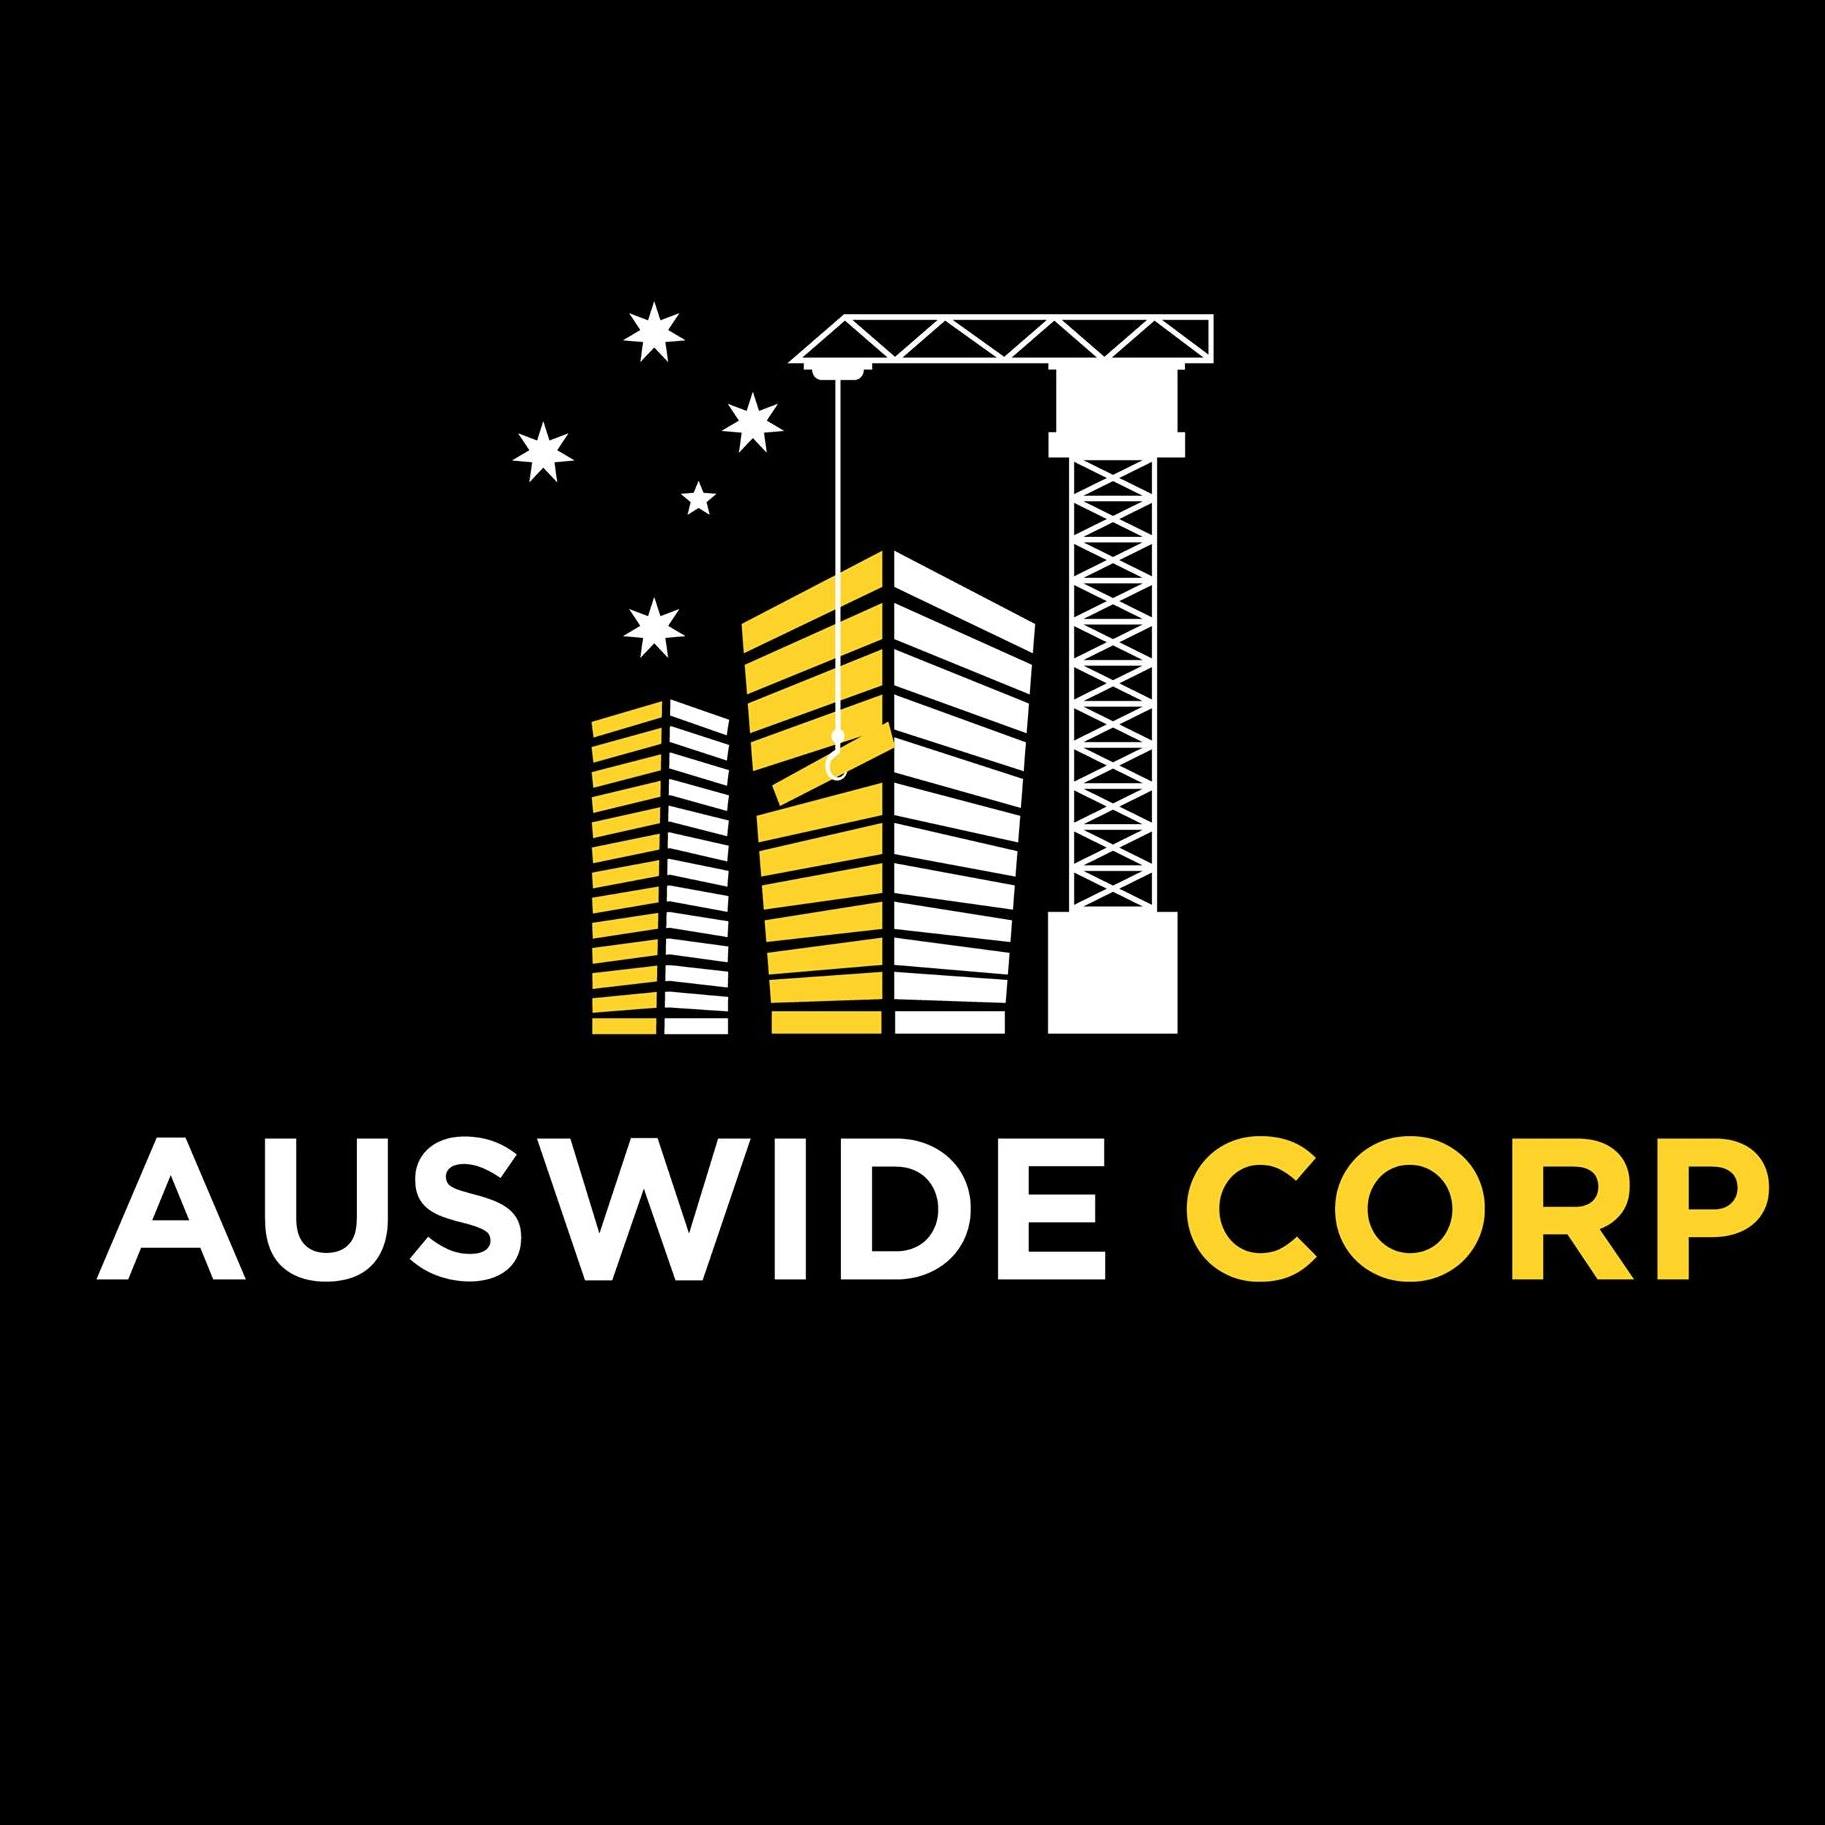 AusWide Corp